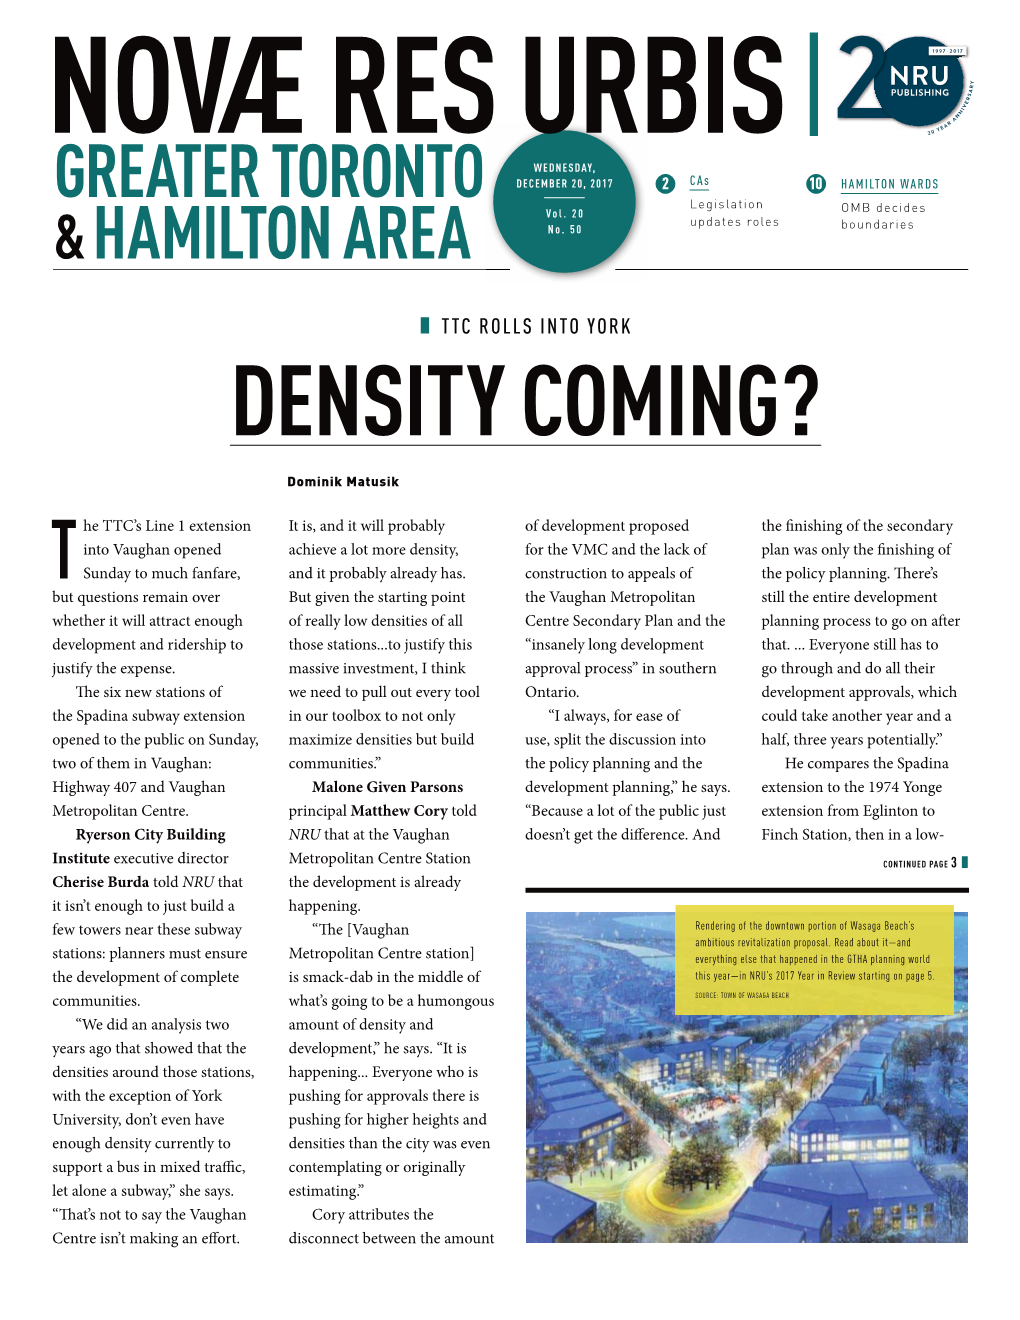 Density Coming?